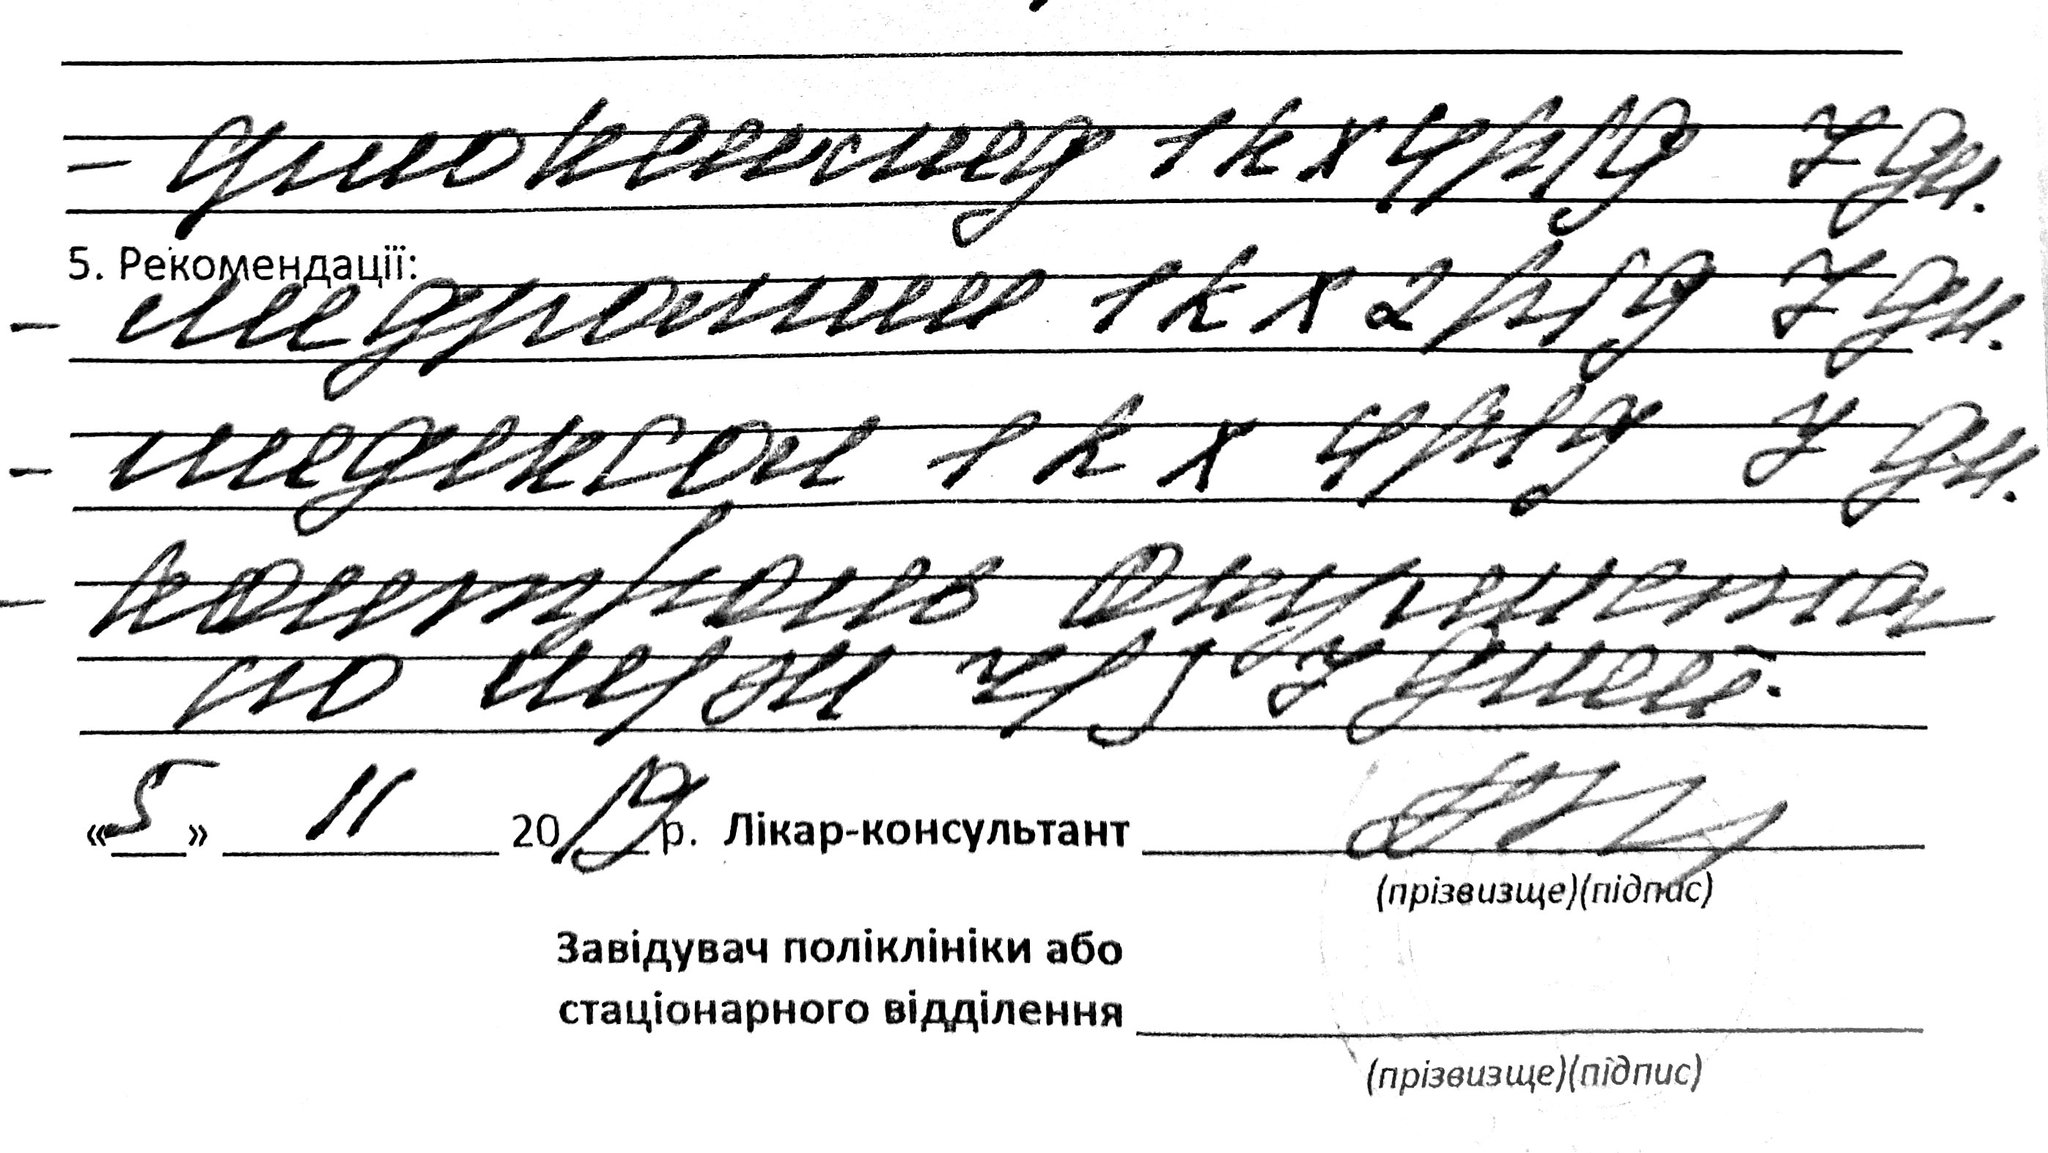 Перевести врачебный почерк онлайн по фото